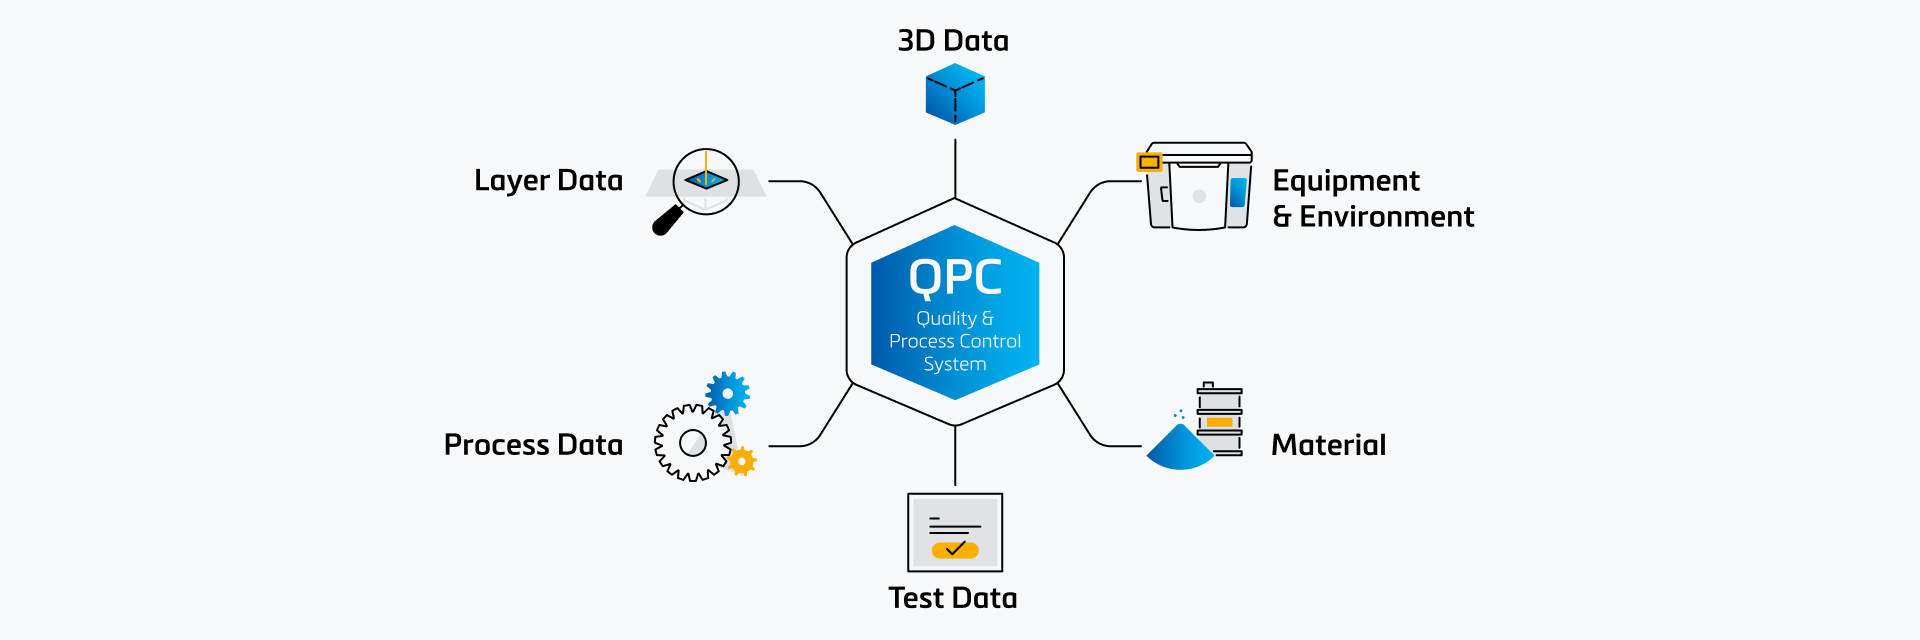 Ein Bild, das zeigt, wie das QPC-System mit verschiedenen Datenquellen verbunden ist, z. B. mit Layer-, 3D-, Prozess- und Testdaten sowie mit Material- und Ausrüstungs- und Umgebungsinformationen.